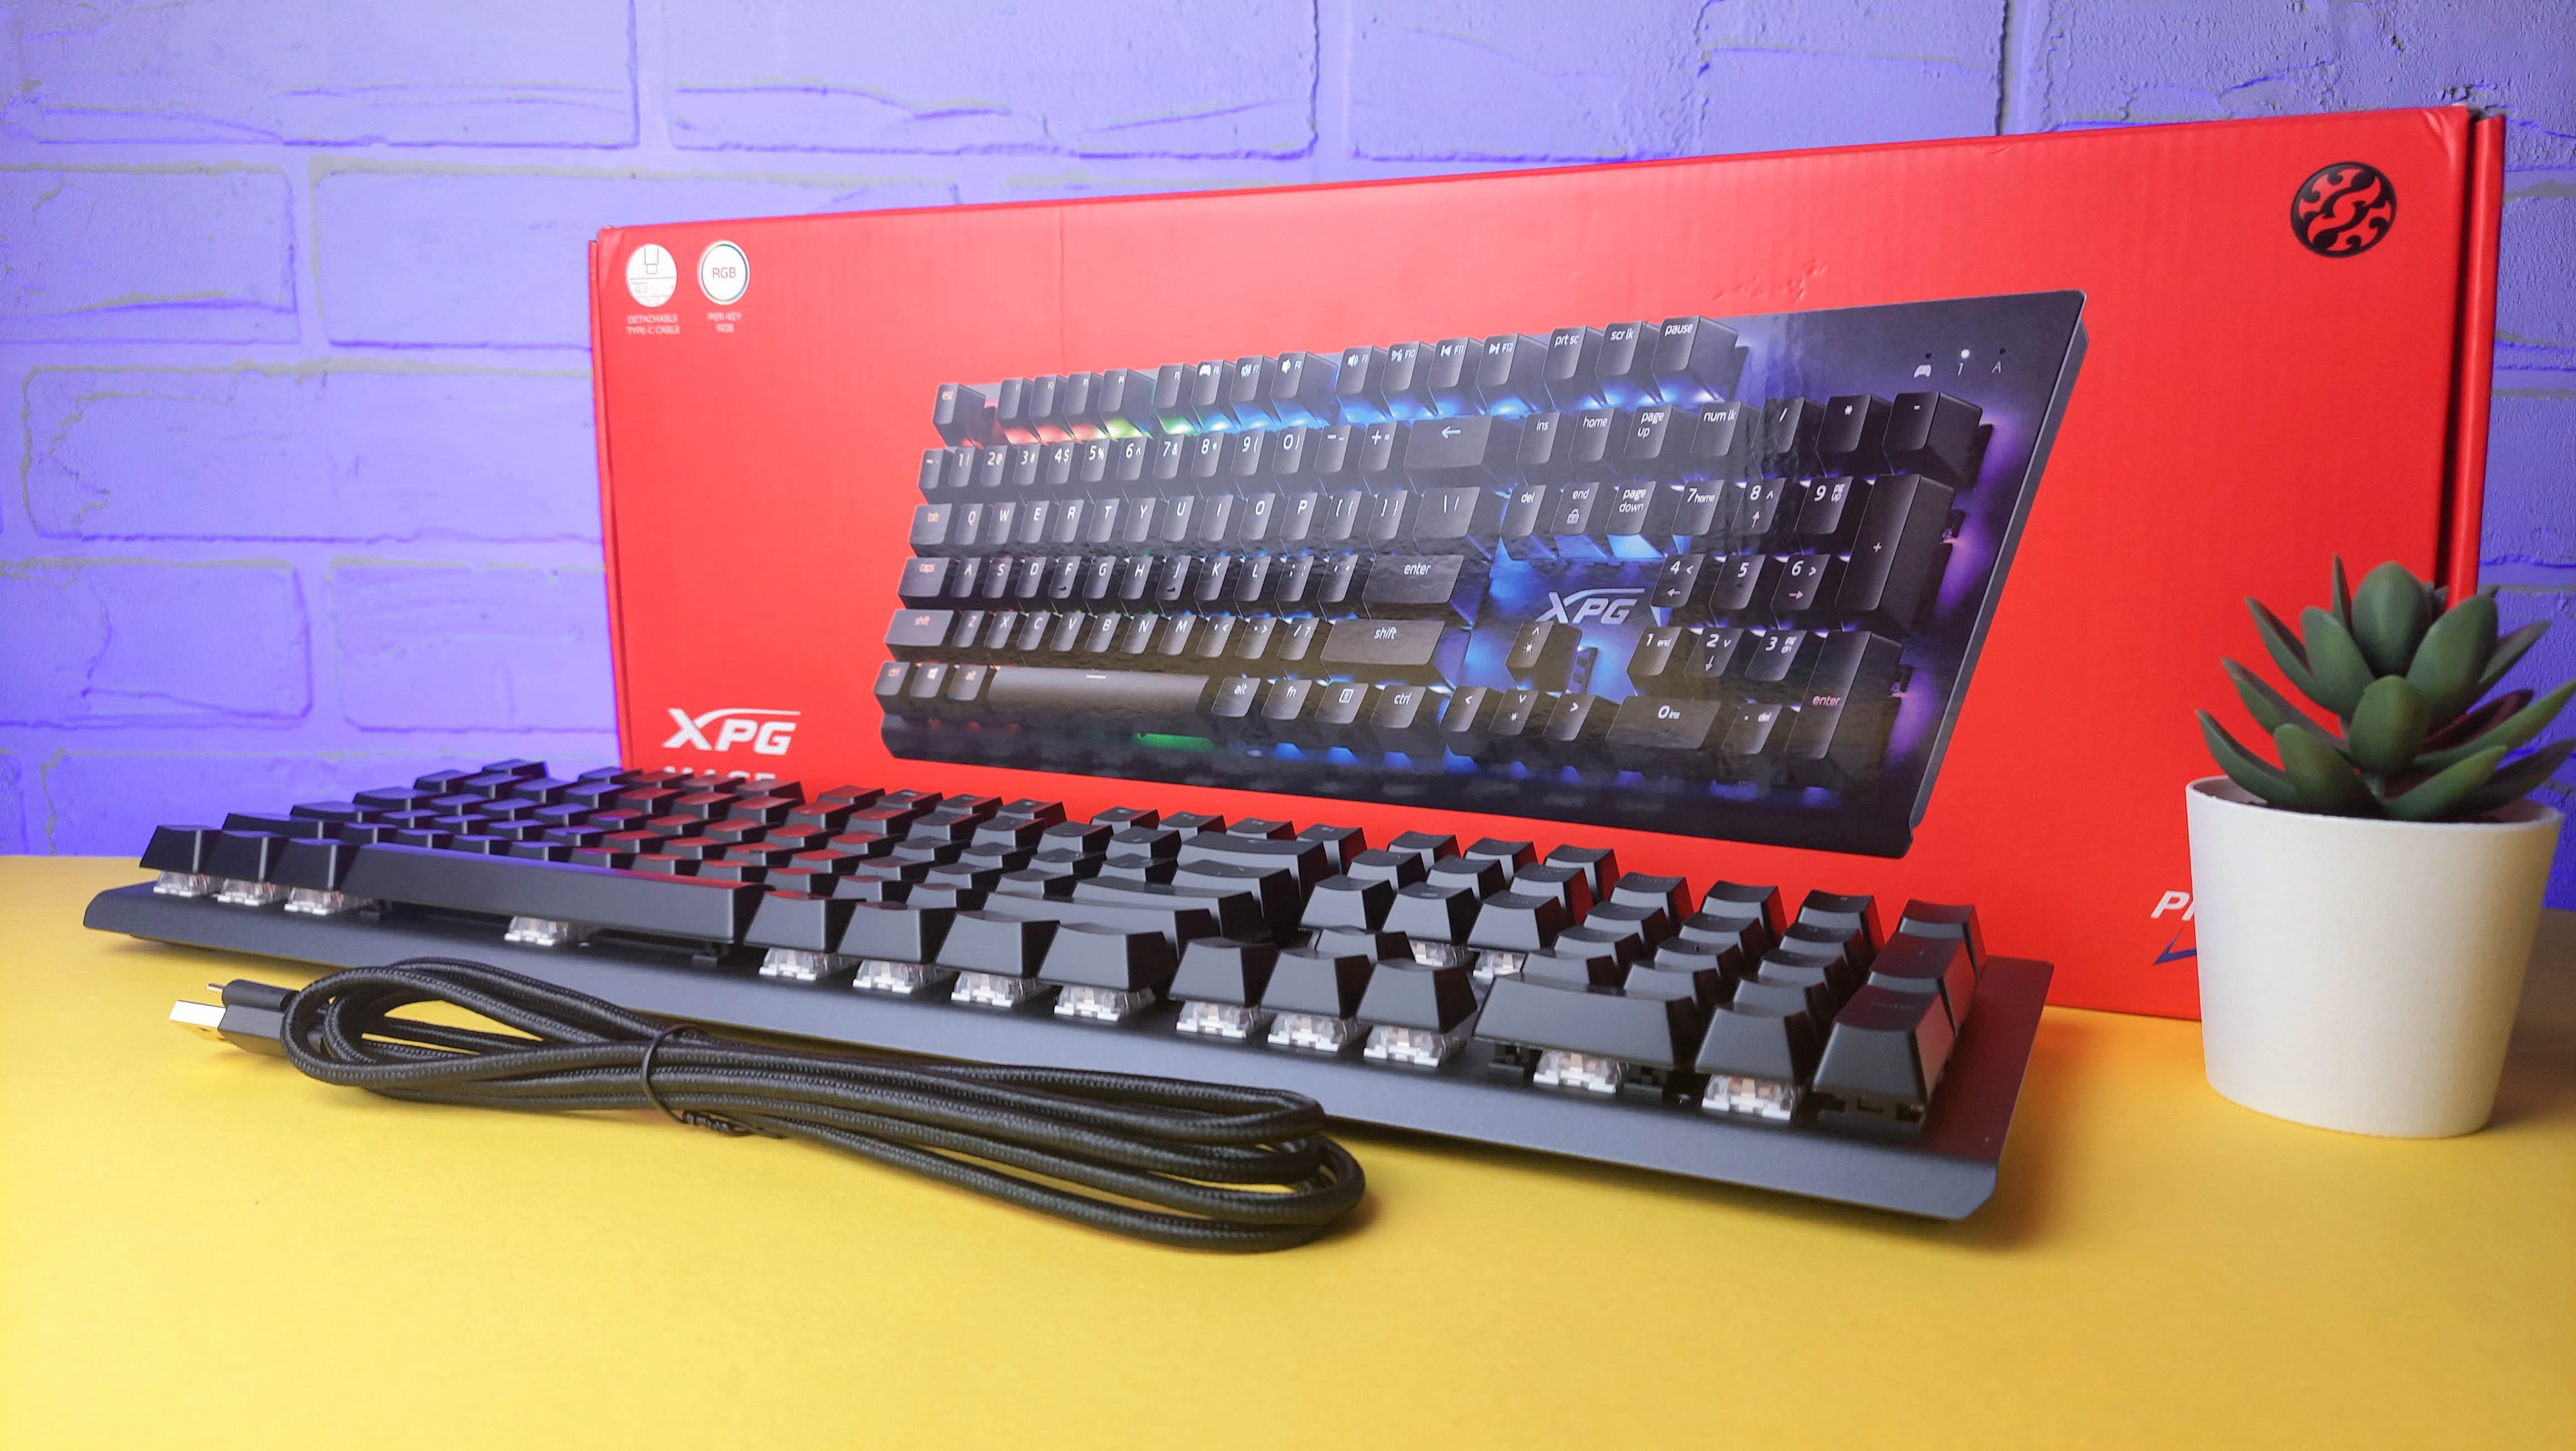 Обзор XPG Mage: игровая механическая клавиатура с RGB-подсветкой и съёмным кабелем - фото 6